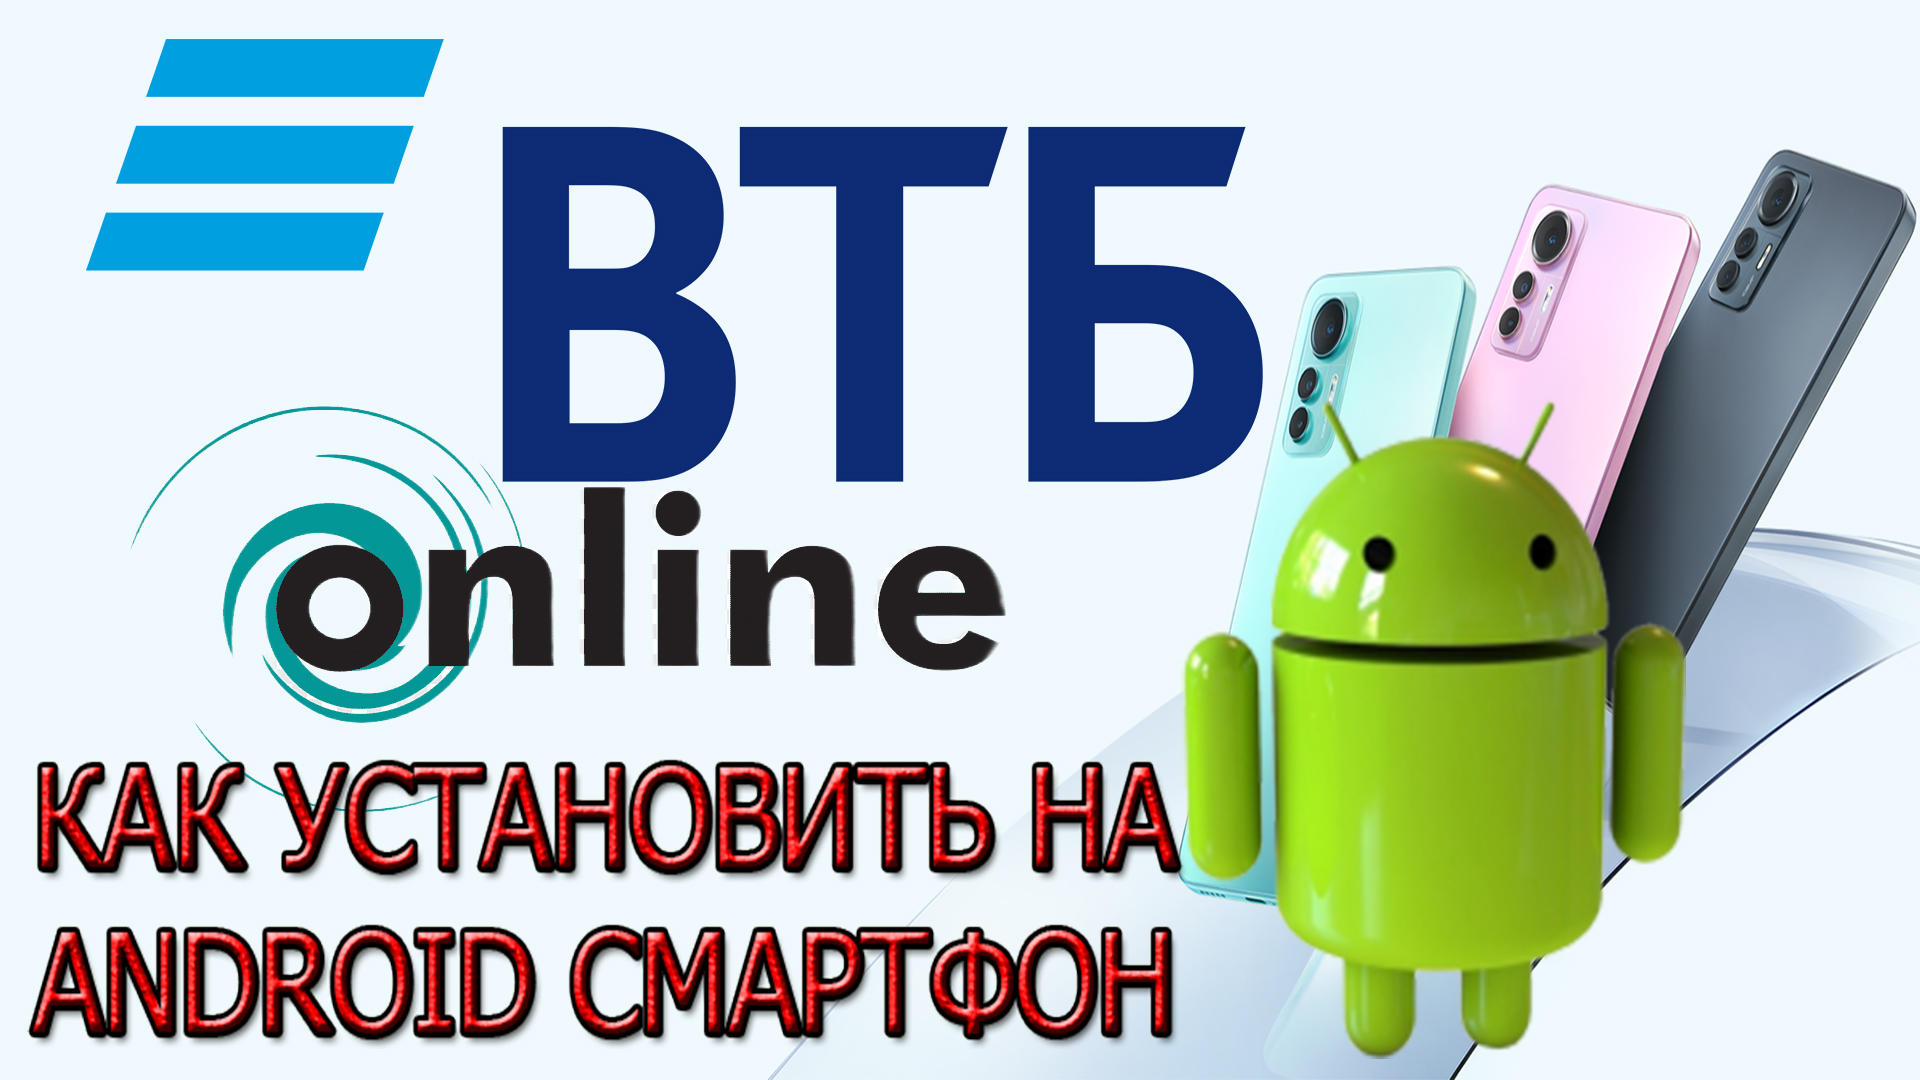 Как установить приложение ВТБ Онлайн на смартфон